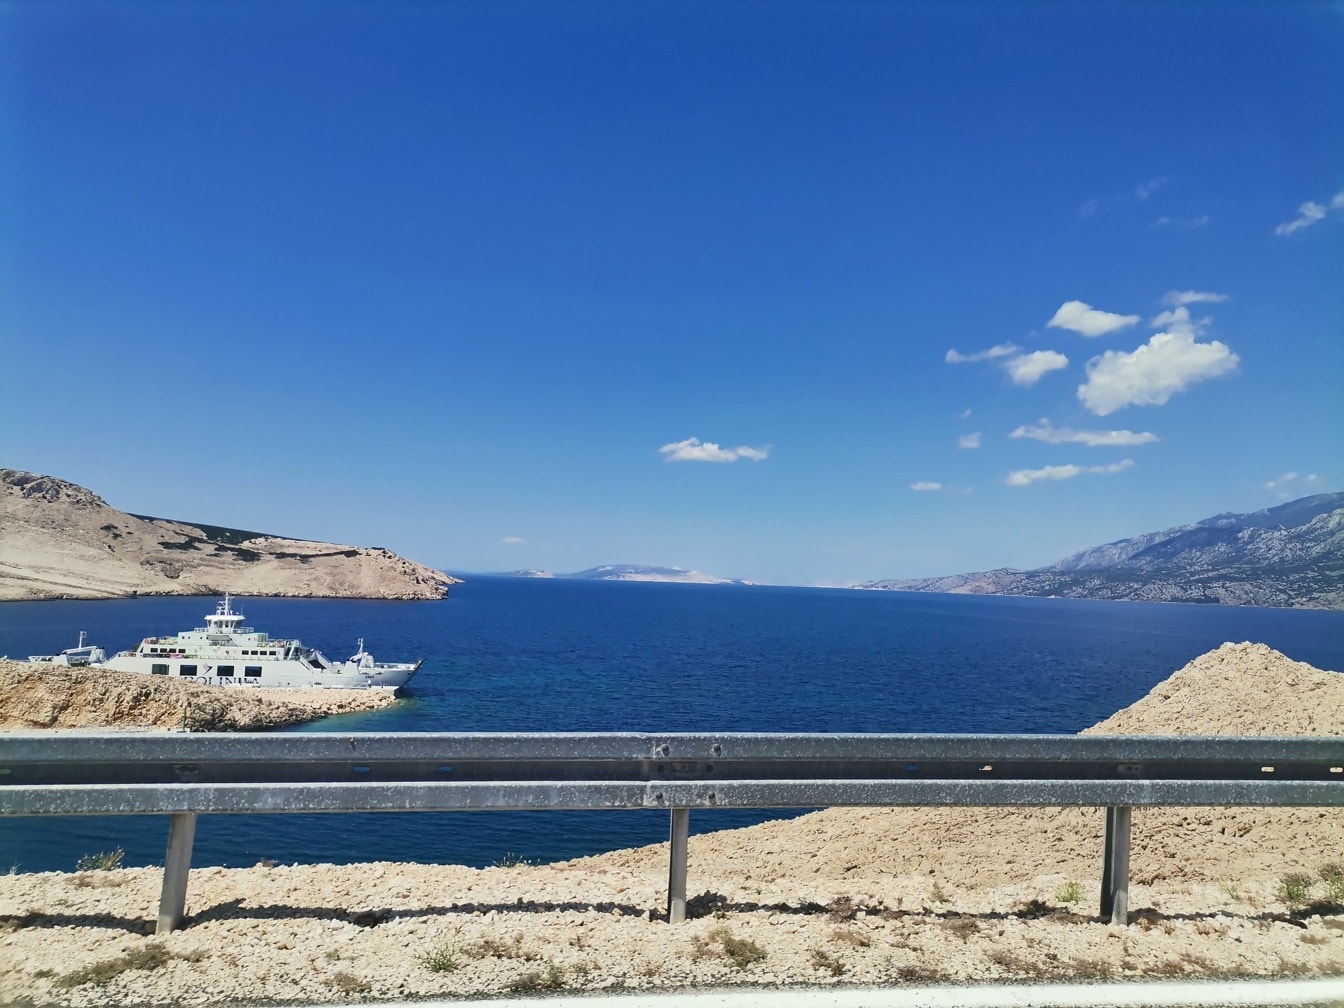 Vista panorâmica do mar Adriático com navio de cruzeiro